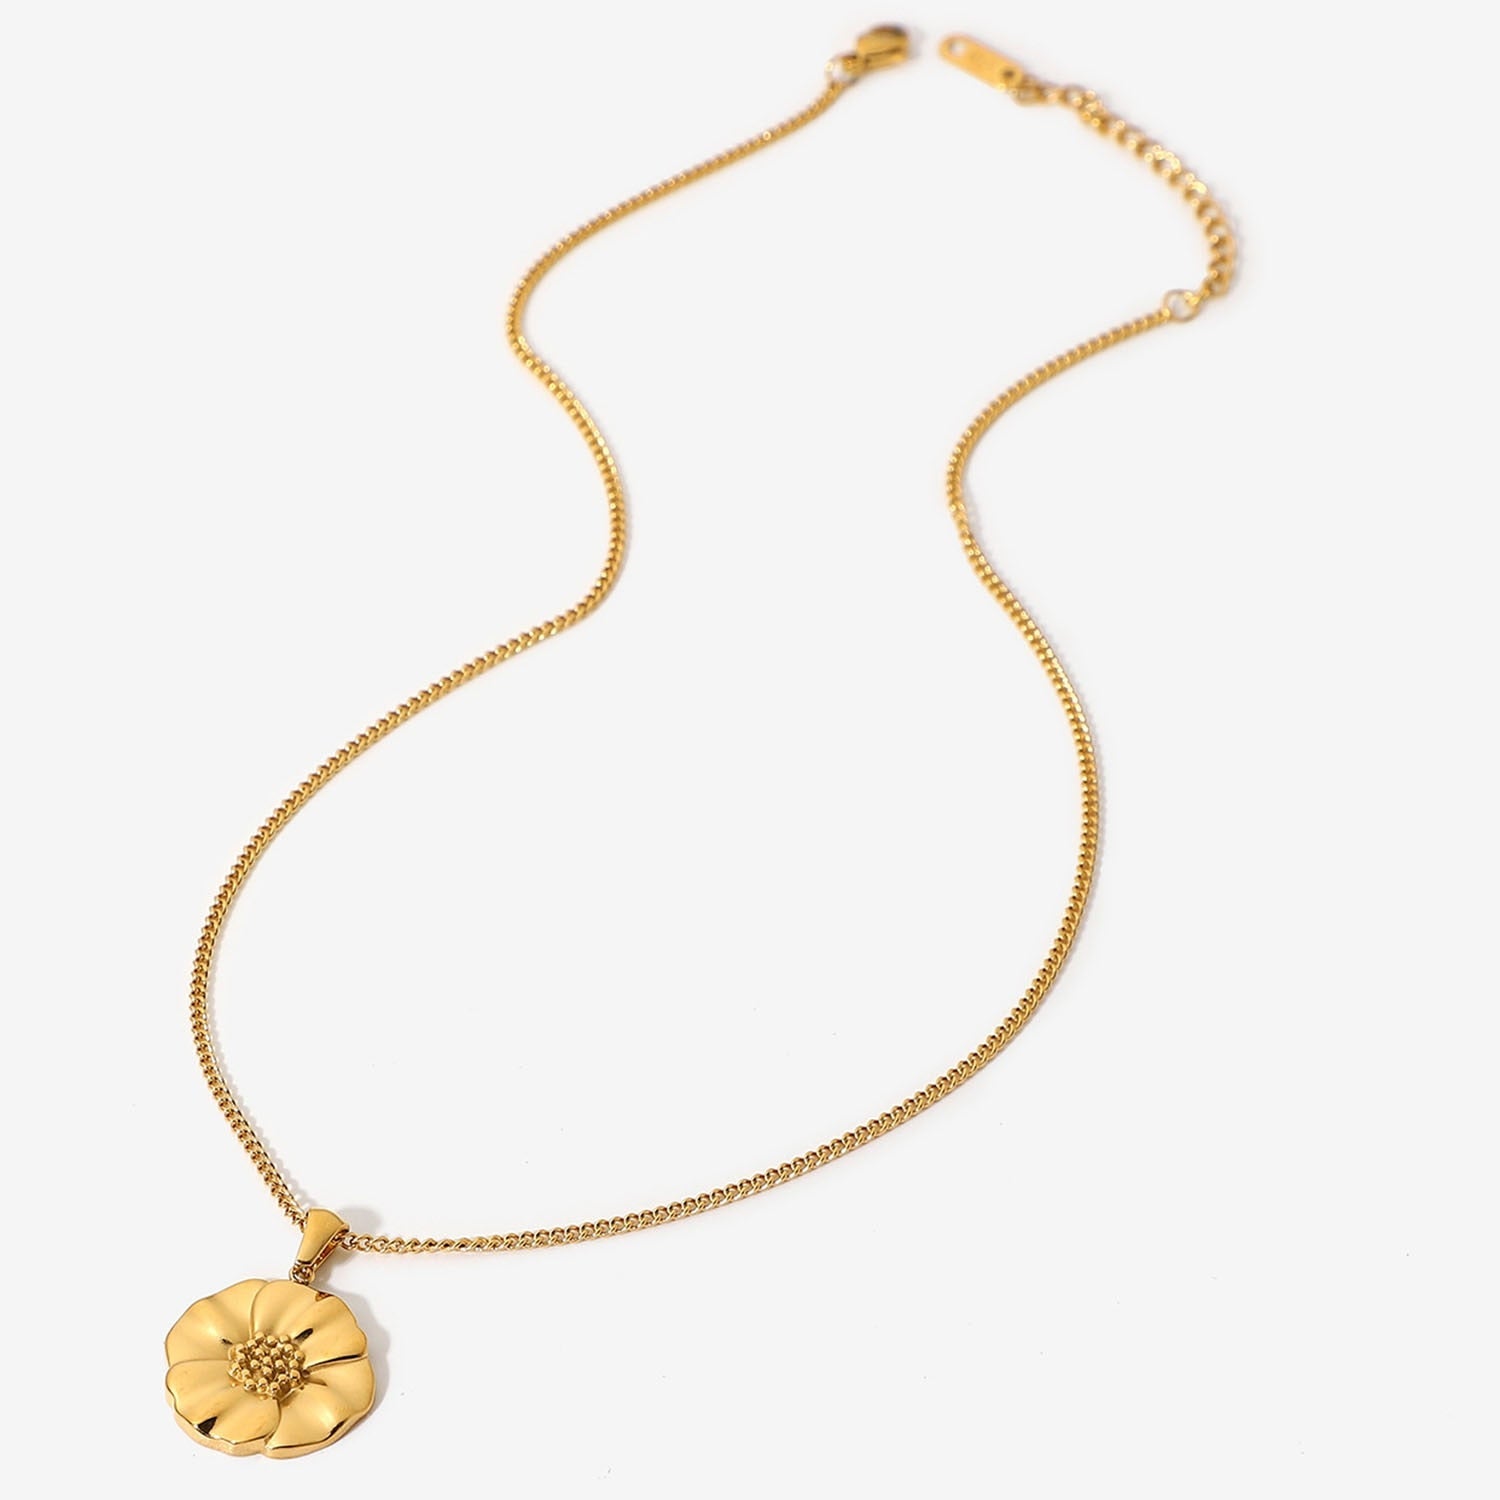 Commemorative Poppy Flower Necklace-Necklace-NEVANNA